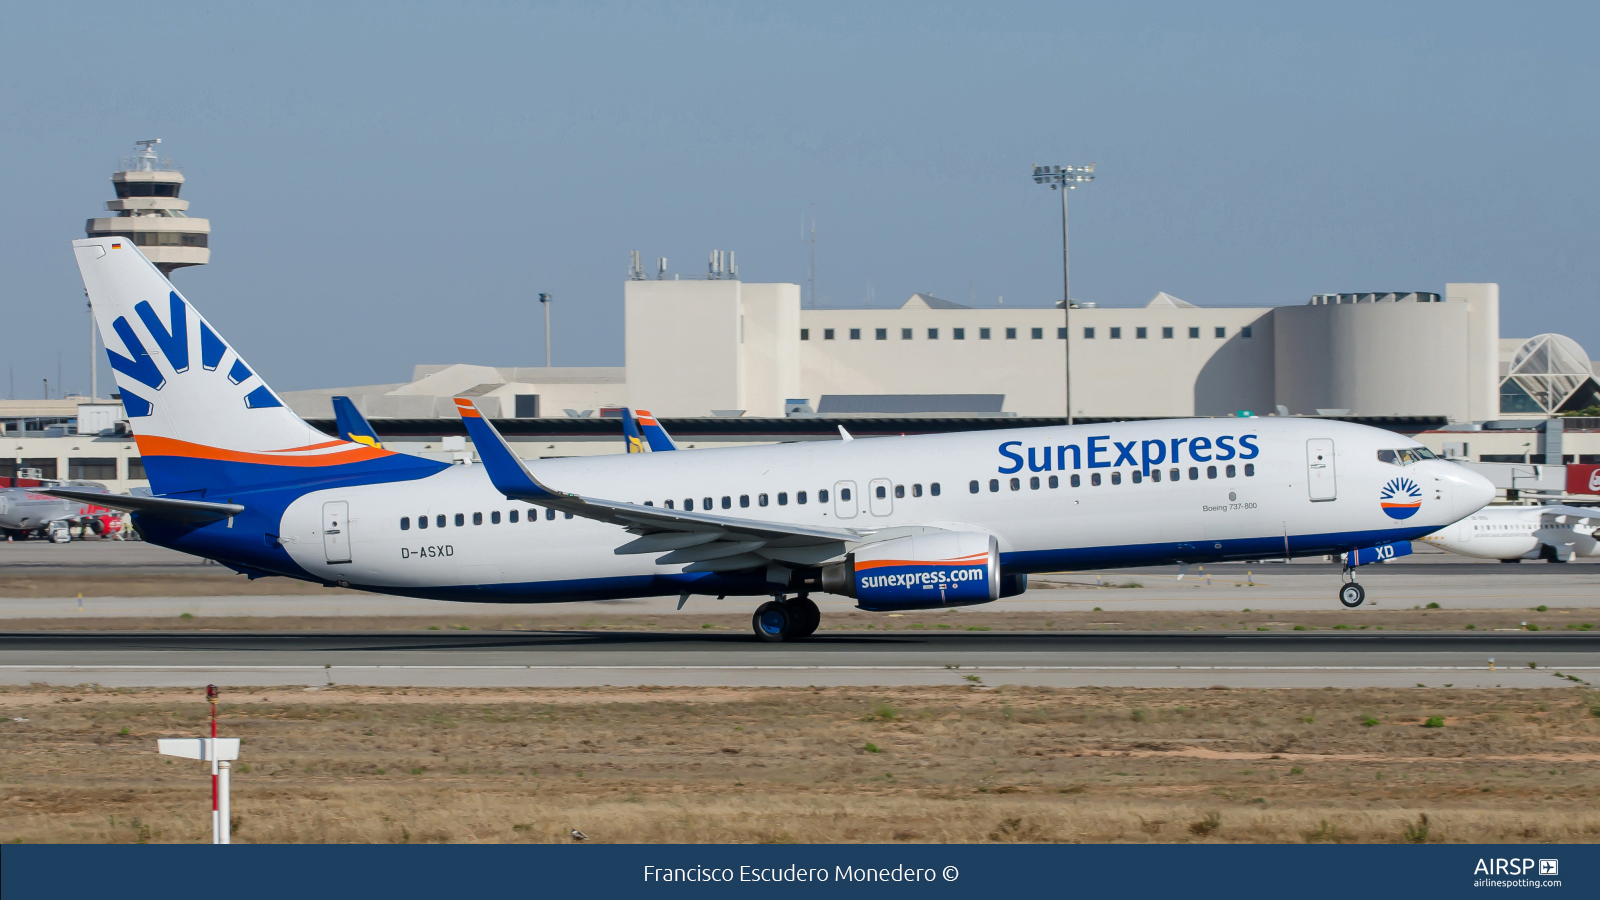 Sun Express  Boeing 737-800  D-ASXD